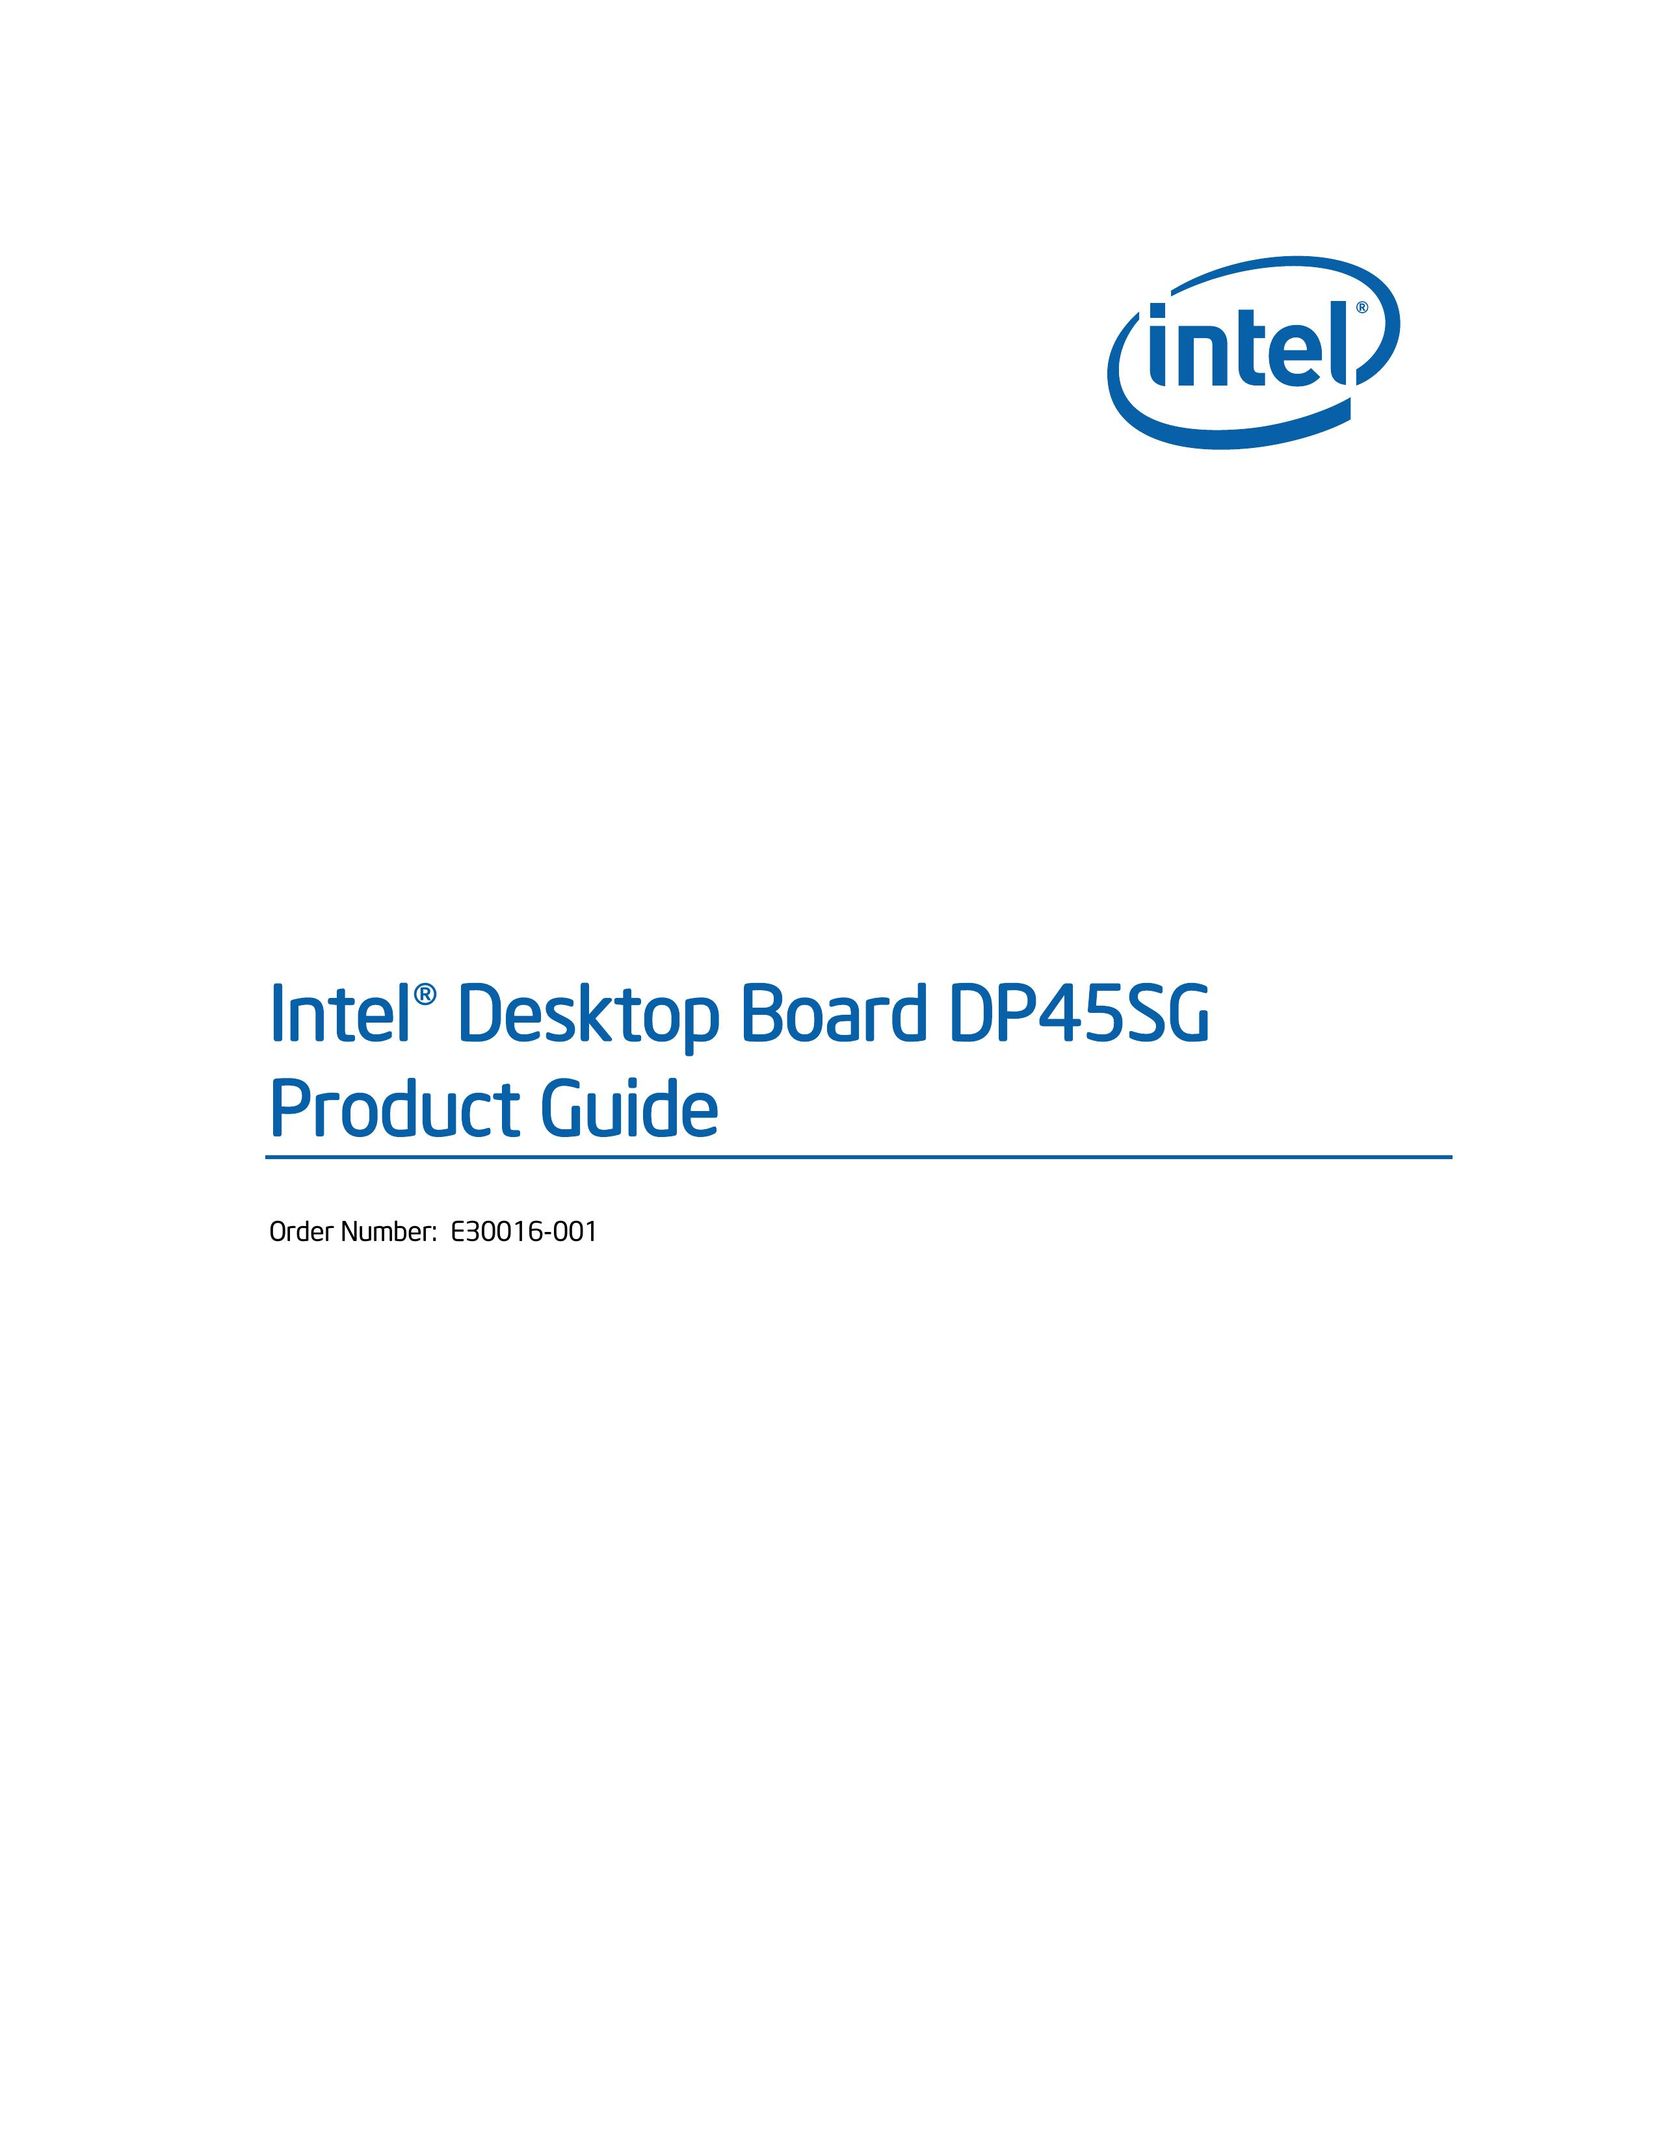 Intel DP45SG Personal Computer User Manual